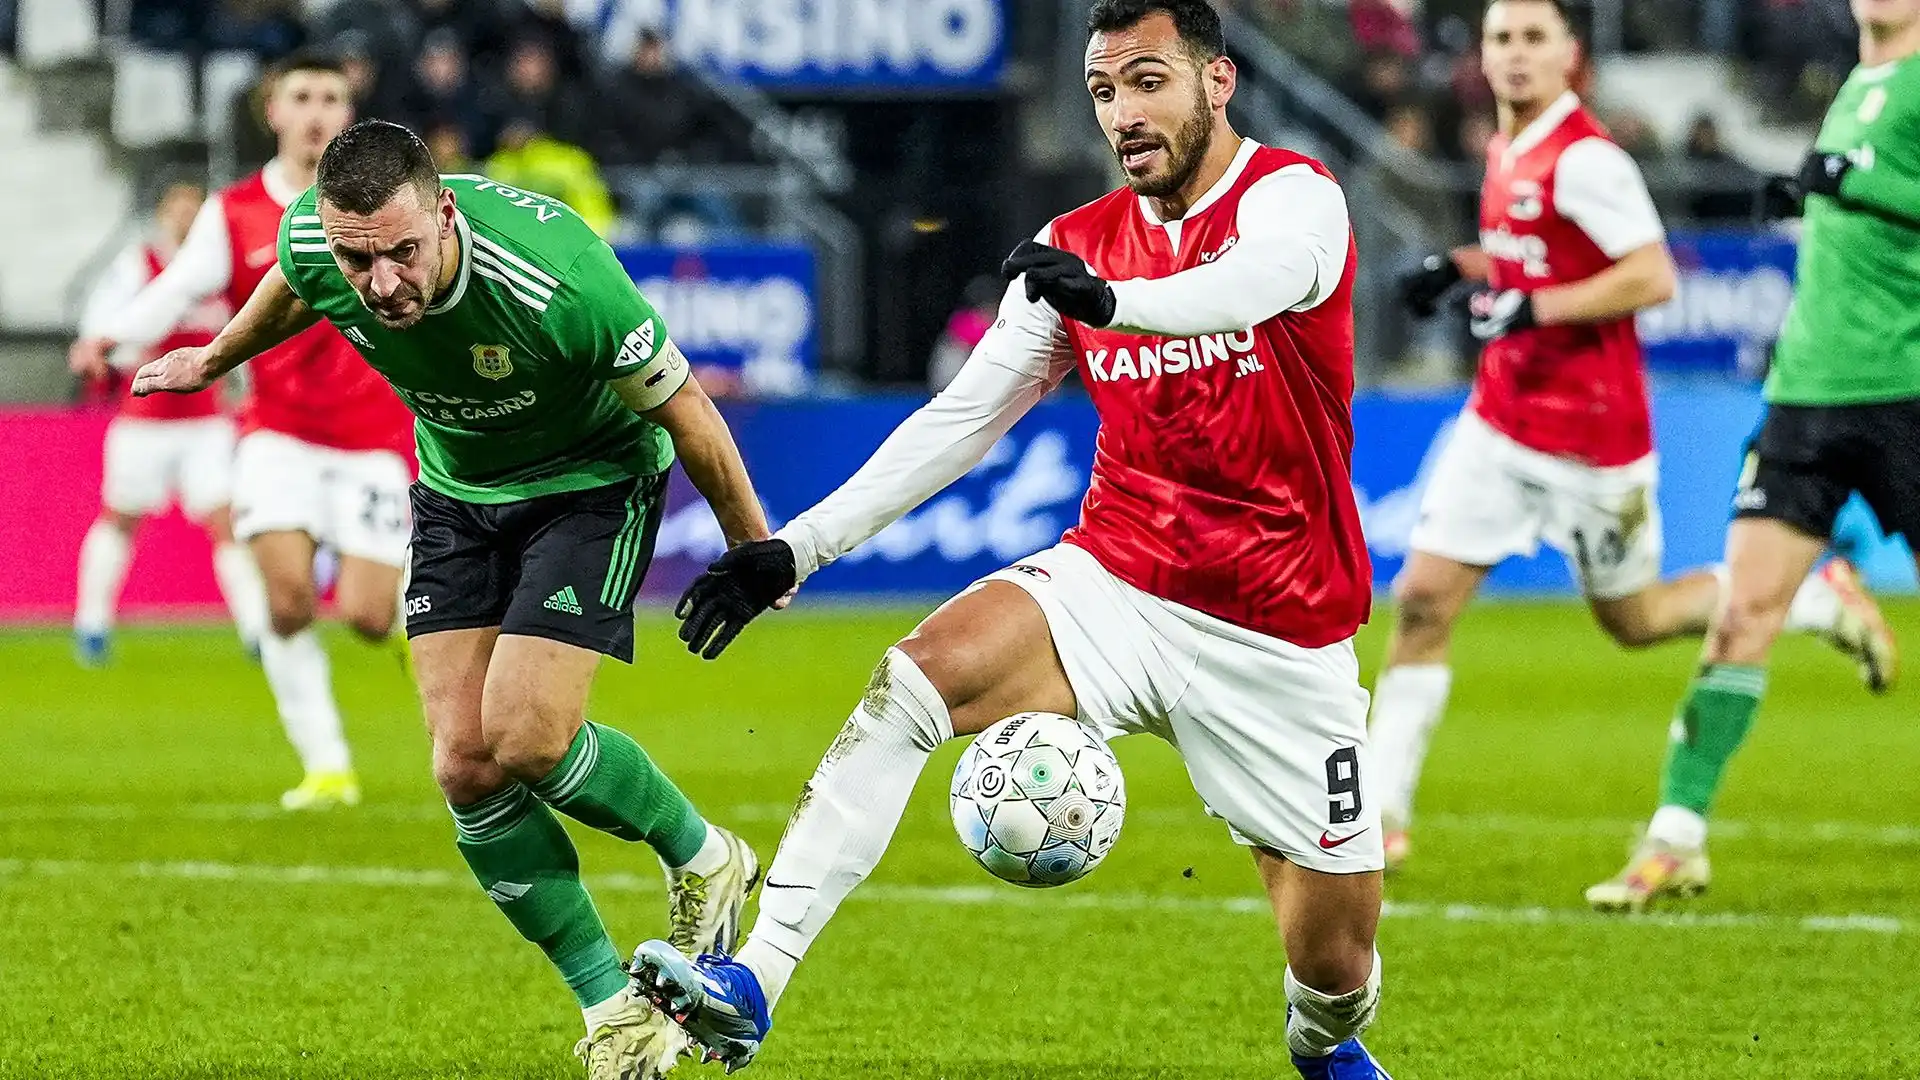 L'attaccante dell'AZ Alkmaar è richiesto in Serie A e in Bundesliga